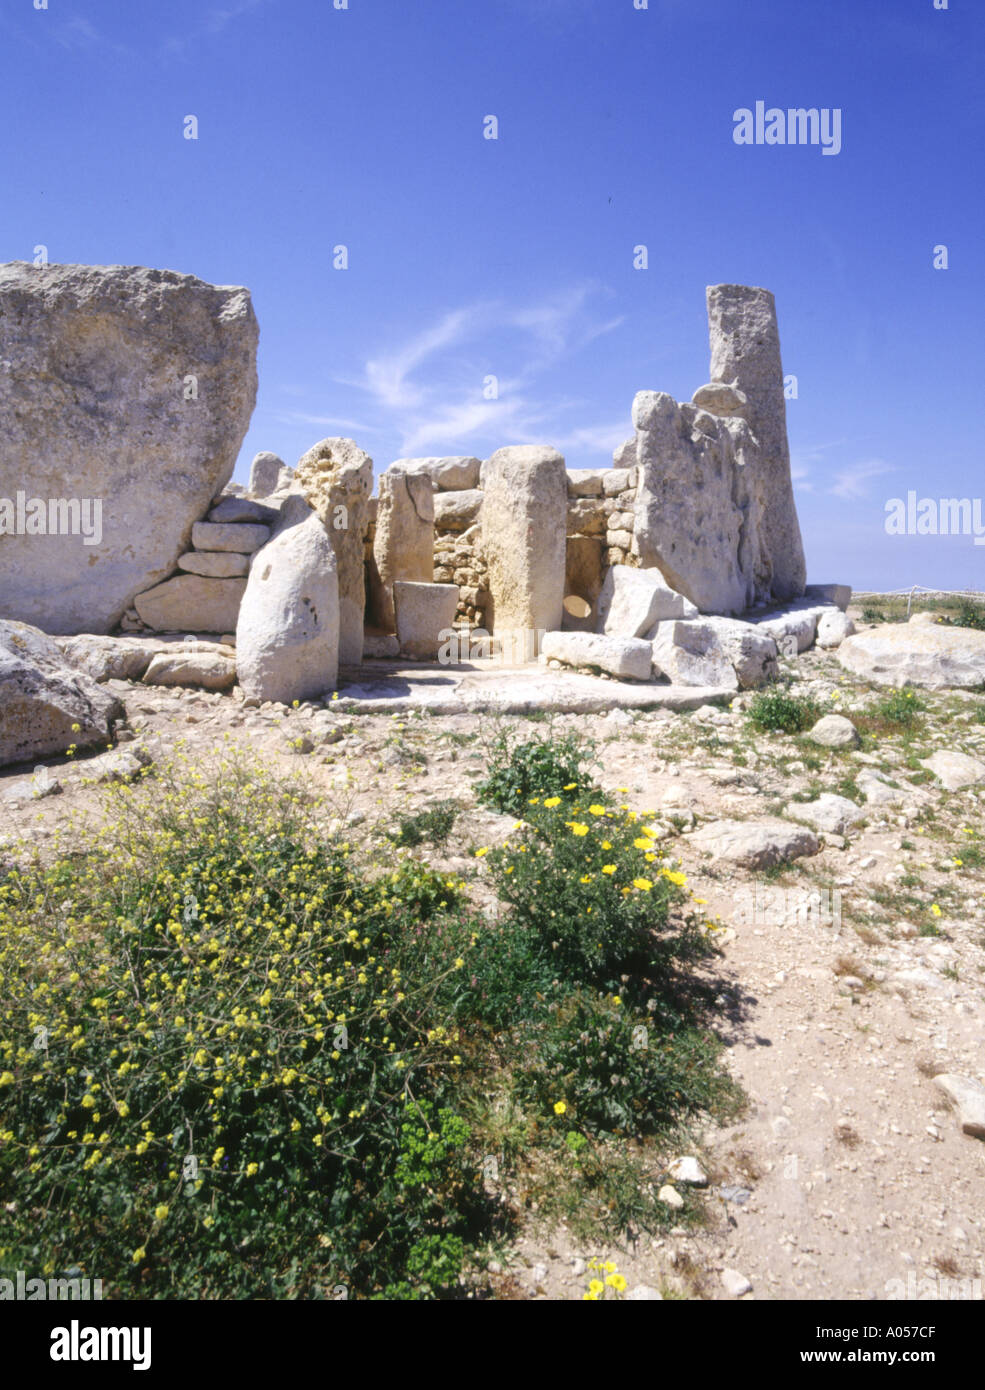 dh Sito Patrimonio dell'Umanità dell'UNESCO HAGAR QIM MALTA tempio neolitico rovine lastre di pietra megalitica europa preistorica Foto Stock